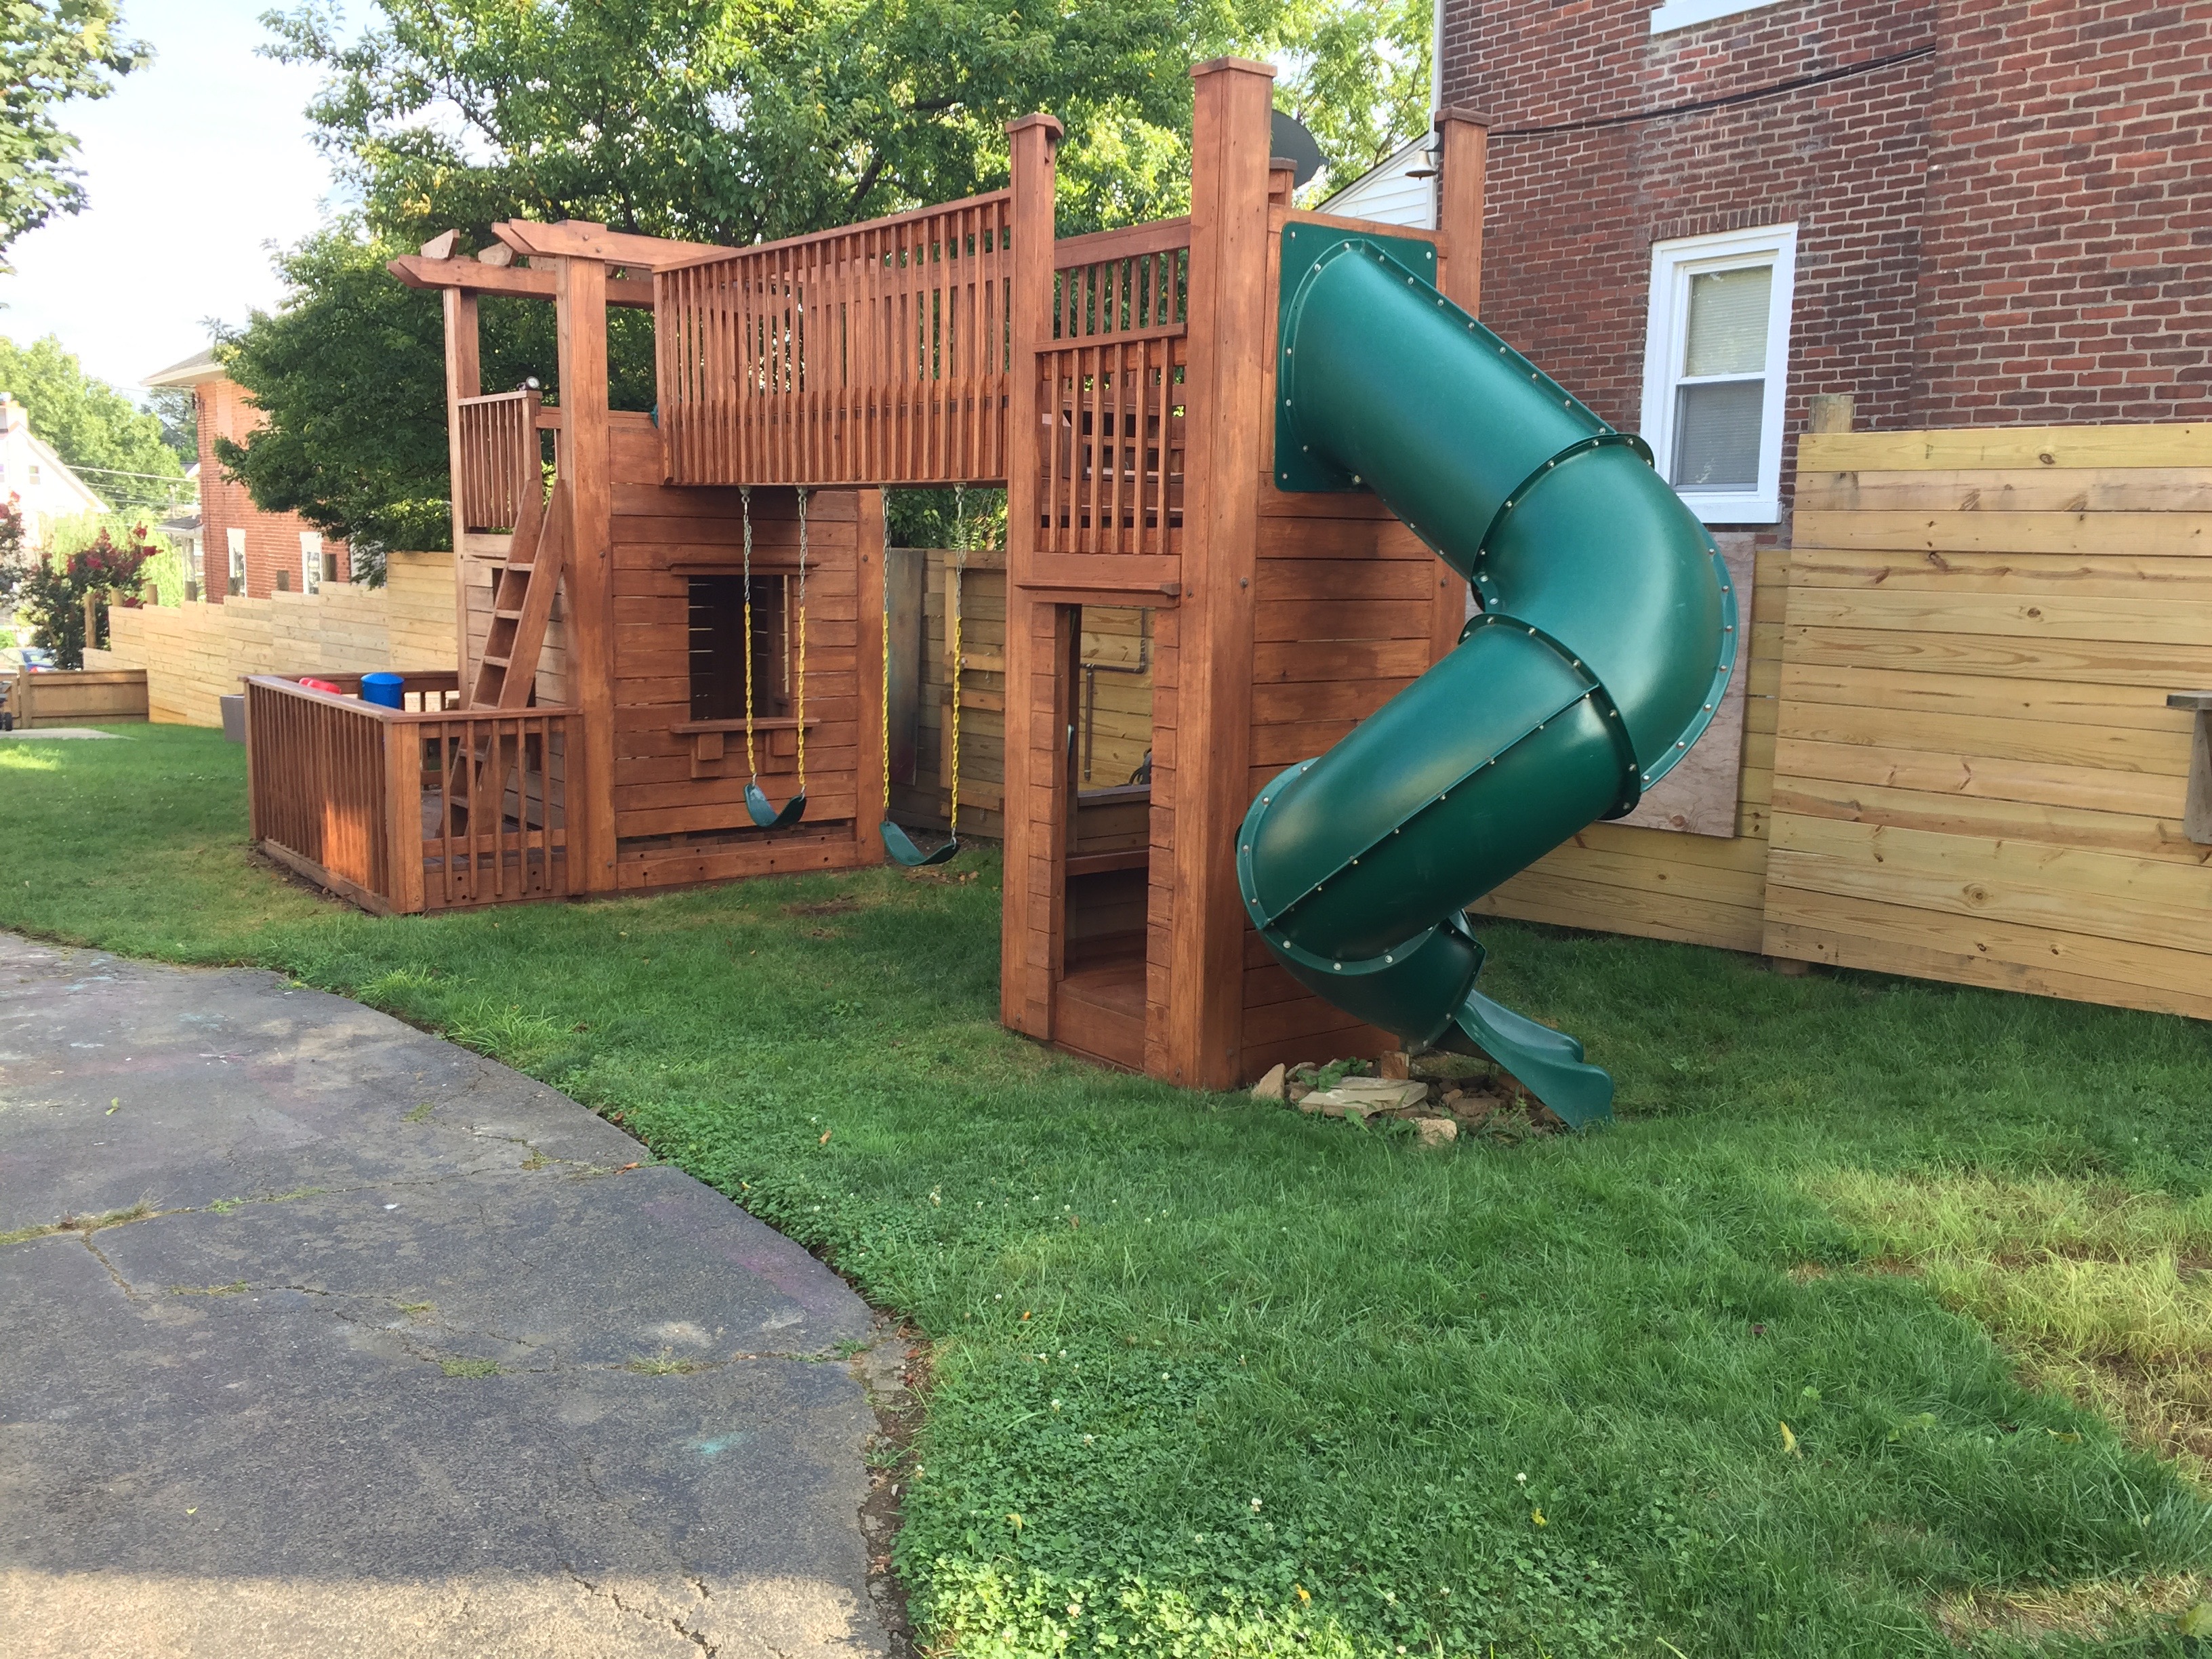 Your DIY! Trevor from Heath, Ohio built a backyard playset ...